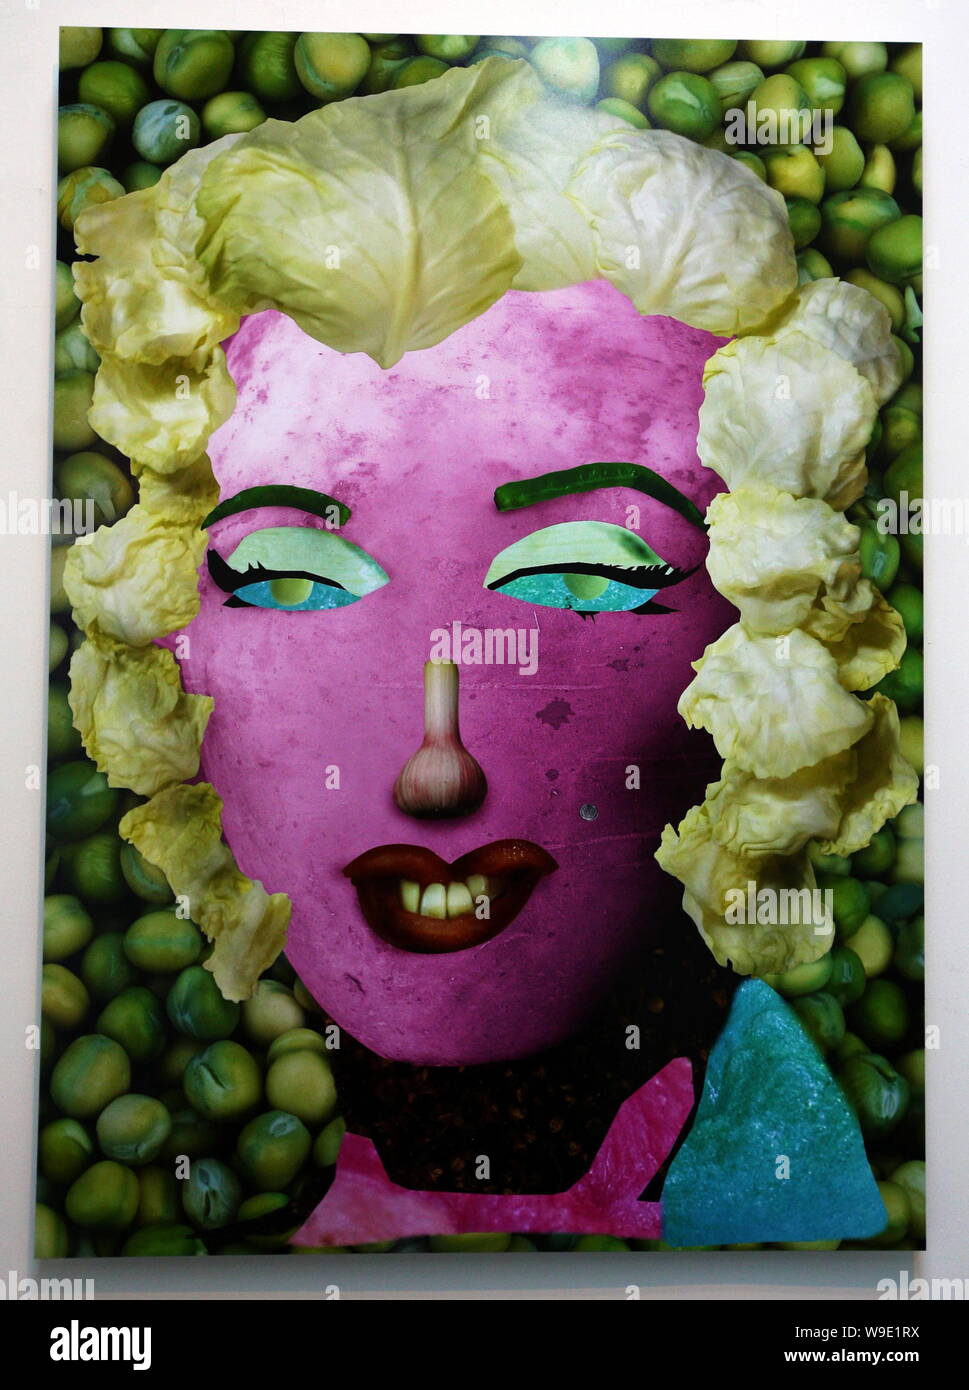 Ein Gemüse-Nachbau des berühmten Gemälde von Andy Warhol Marilyn Monroe ist  während der pflanzlichen Museum, eine Ausstellung der chinesischen Künstler  Ju gesehen Stockfotografie - Alamy